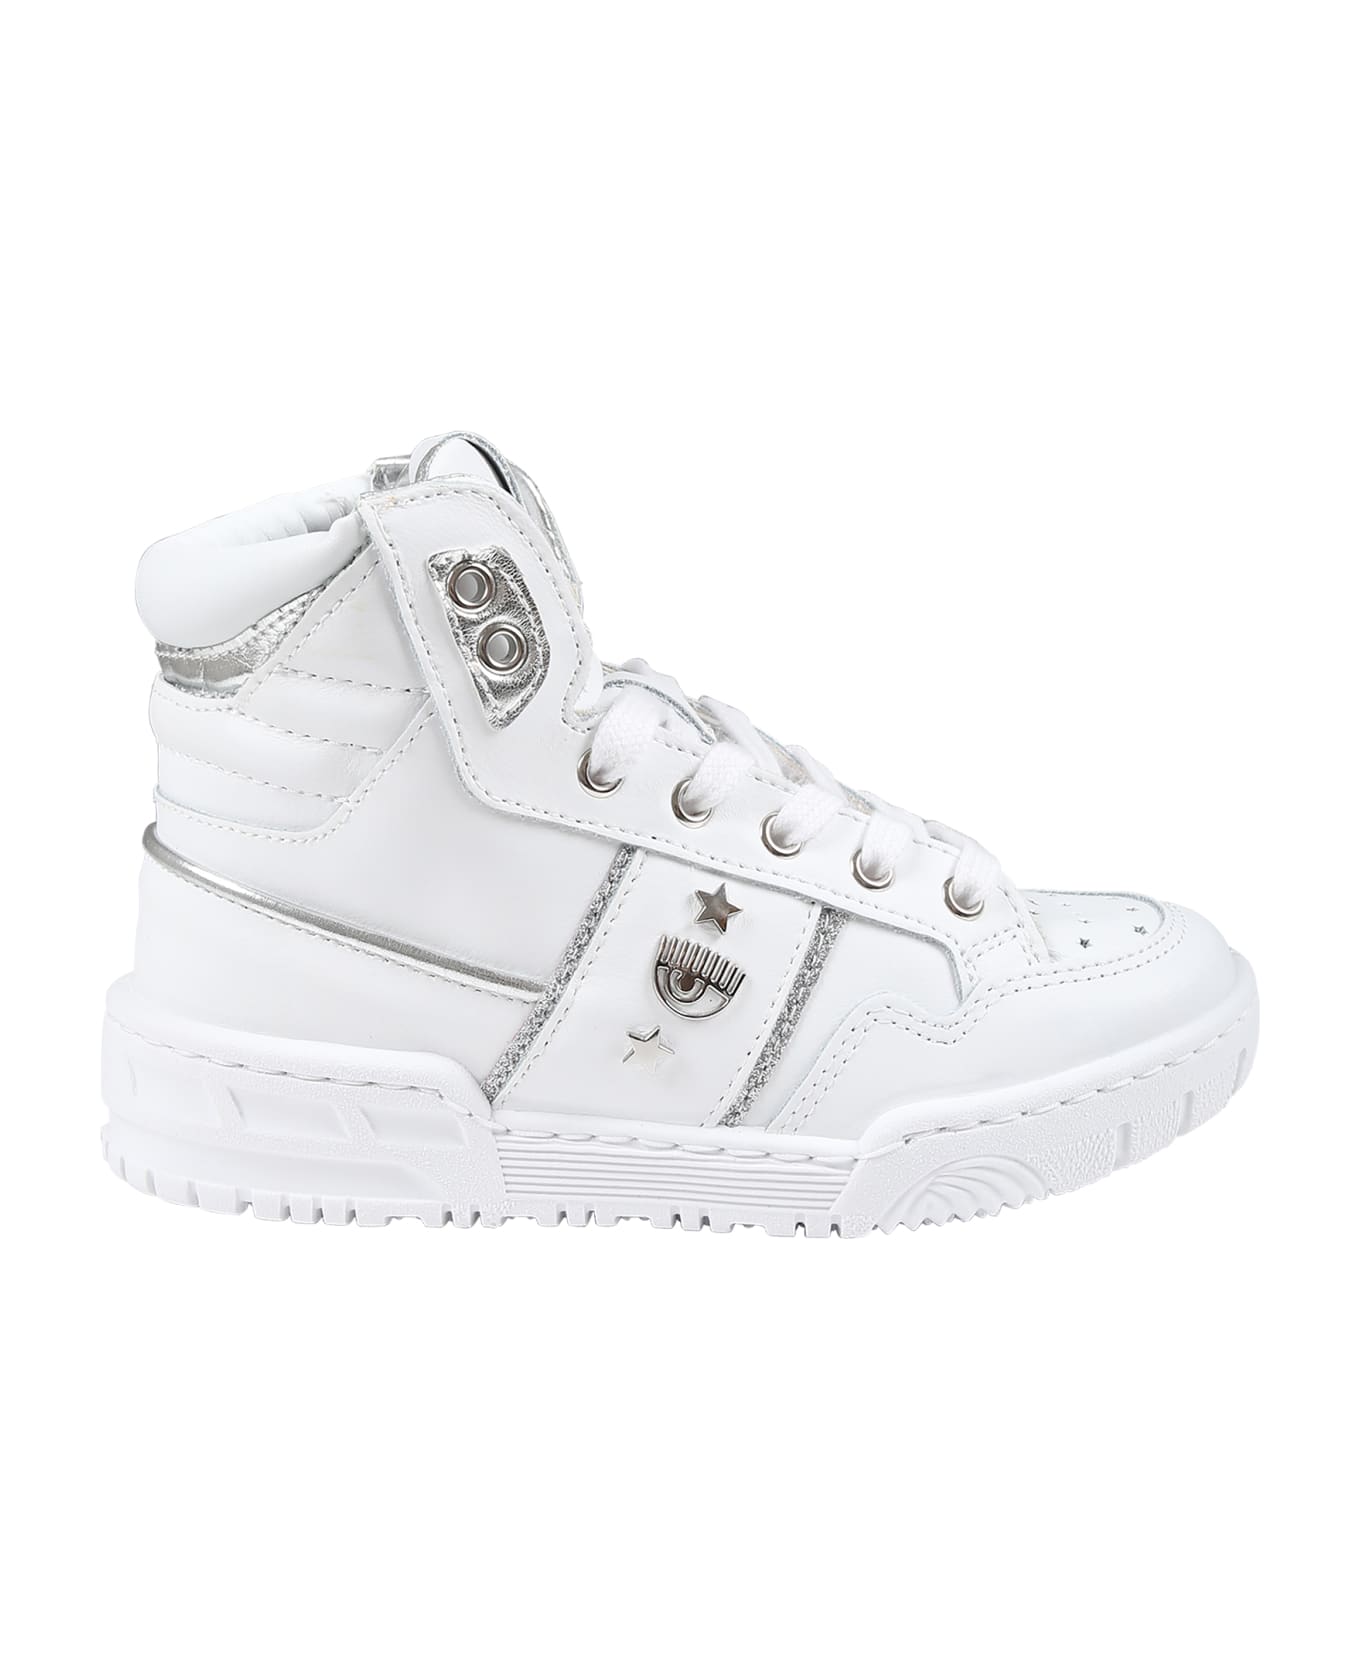 Chiara Ferragni White Sneakers For Girl With Eyestar - White シューズ